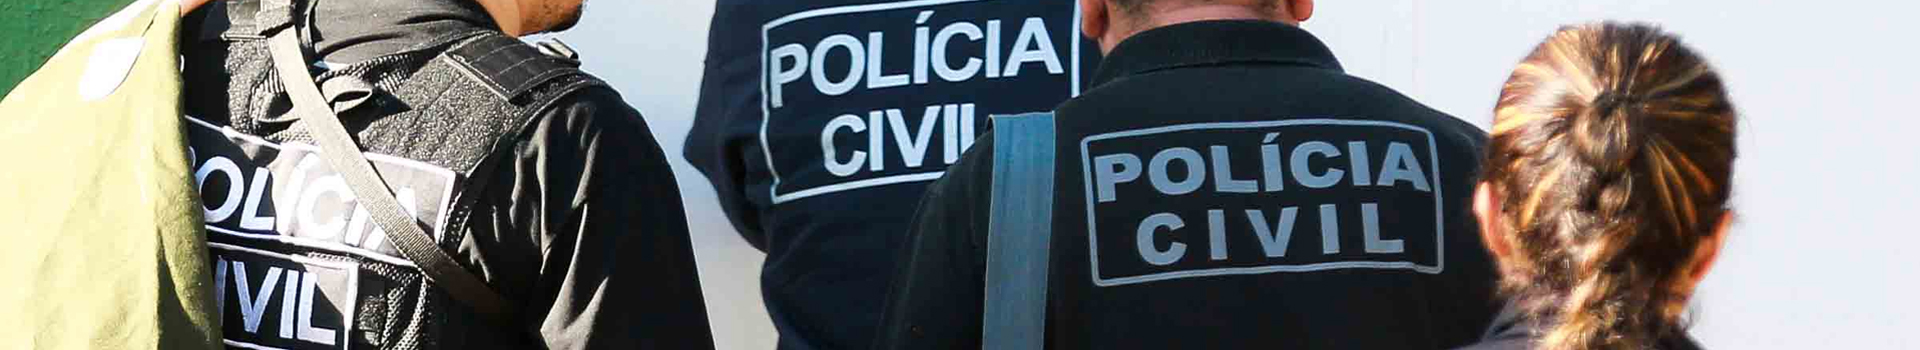 Policia Civil do Distrito Federal – Provas tem datas confirmadas